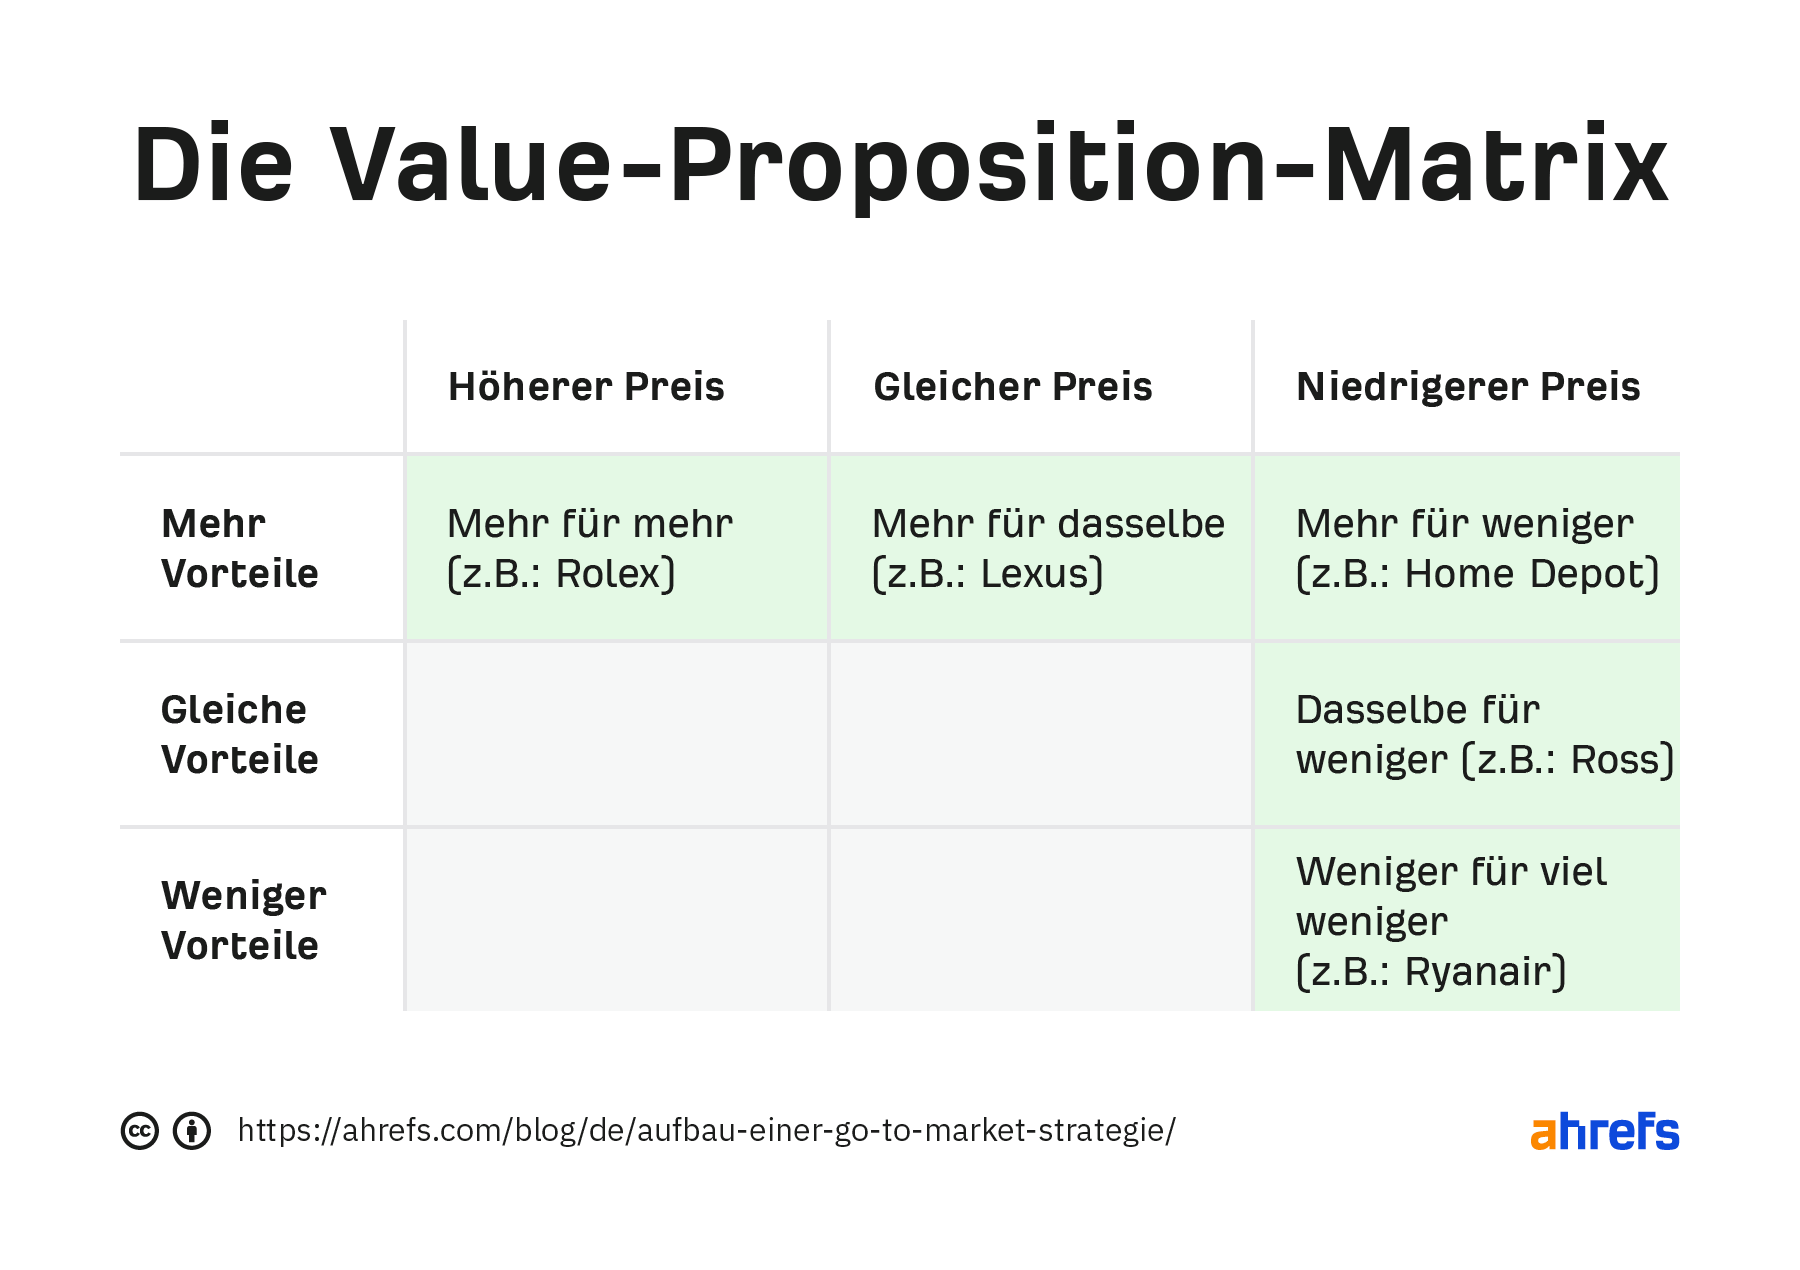 Matrix-Tabelle des Nutzenversprechens. Die drei Spalten sind "höherer Preis", "gleicher Preis" und "niedrigerer Preis". Die Zeilen sind "mehr Nutzen", "gleicher Nutzen" und "weniger Nutzen".